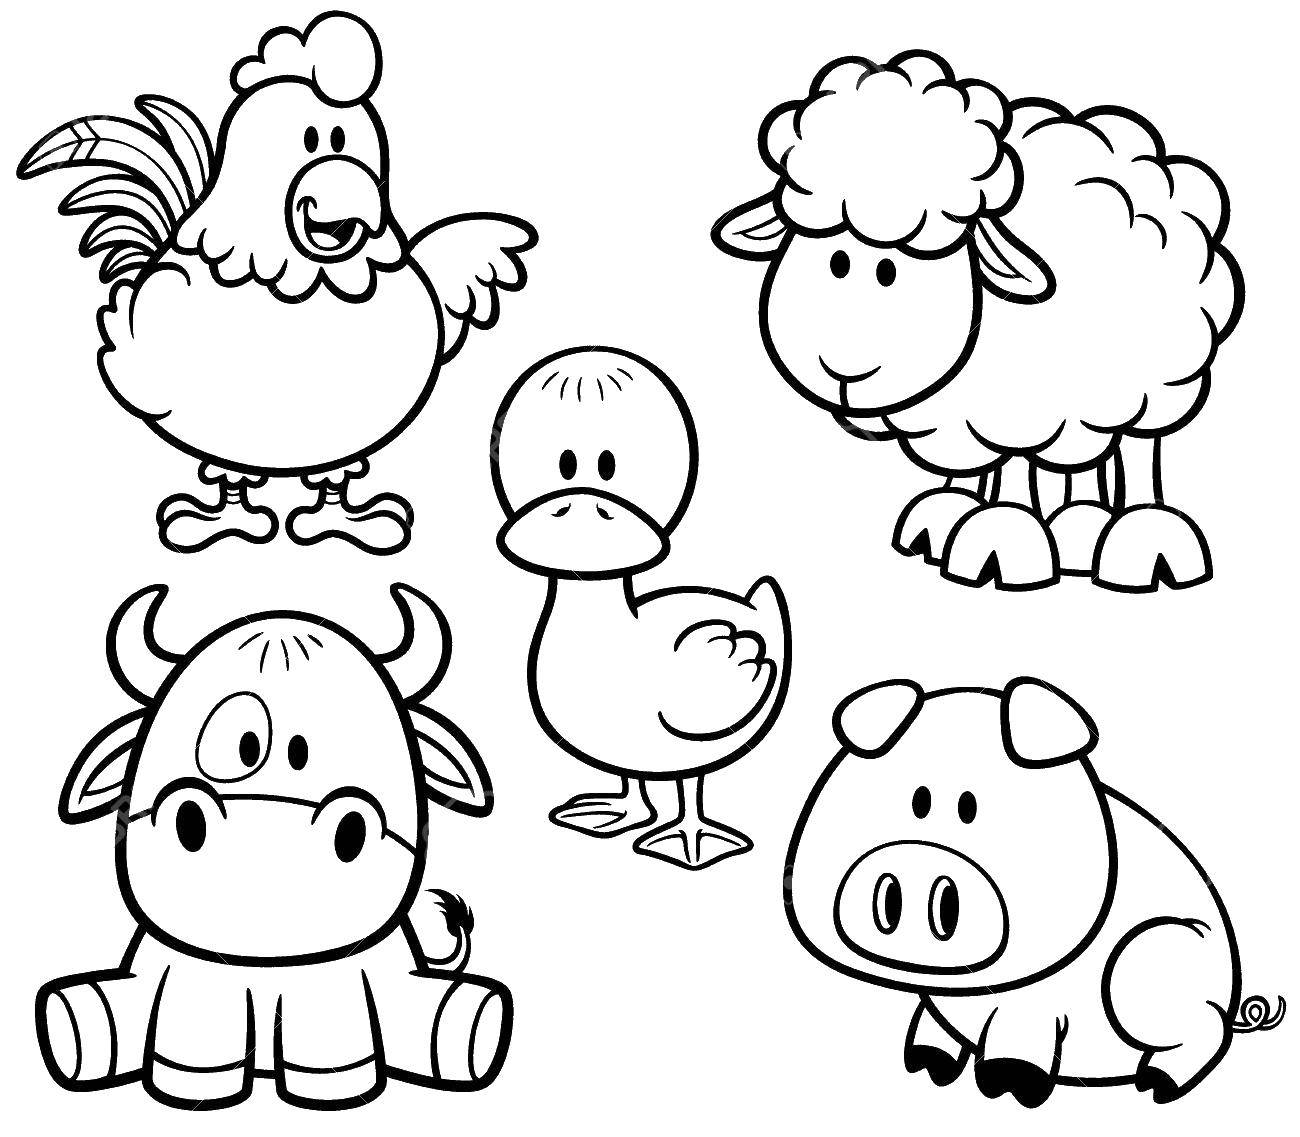 Раскраска домашнего животного для детей (ферма)